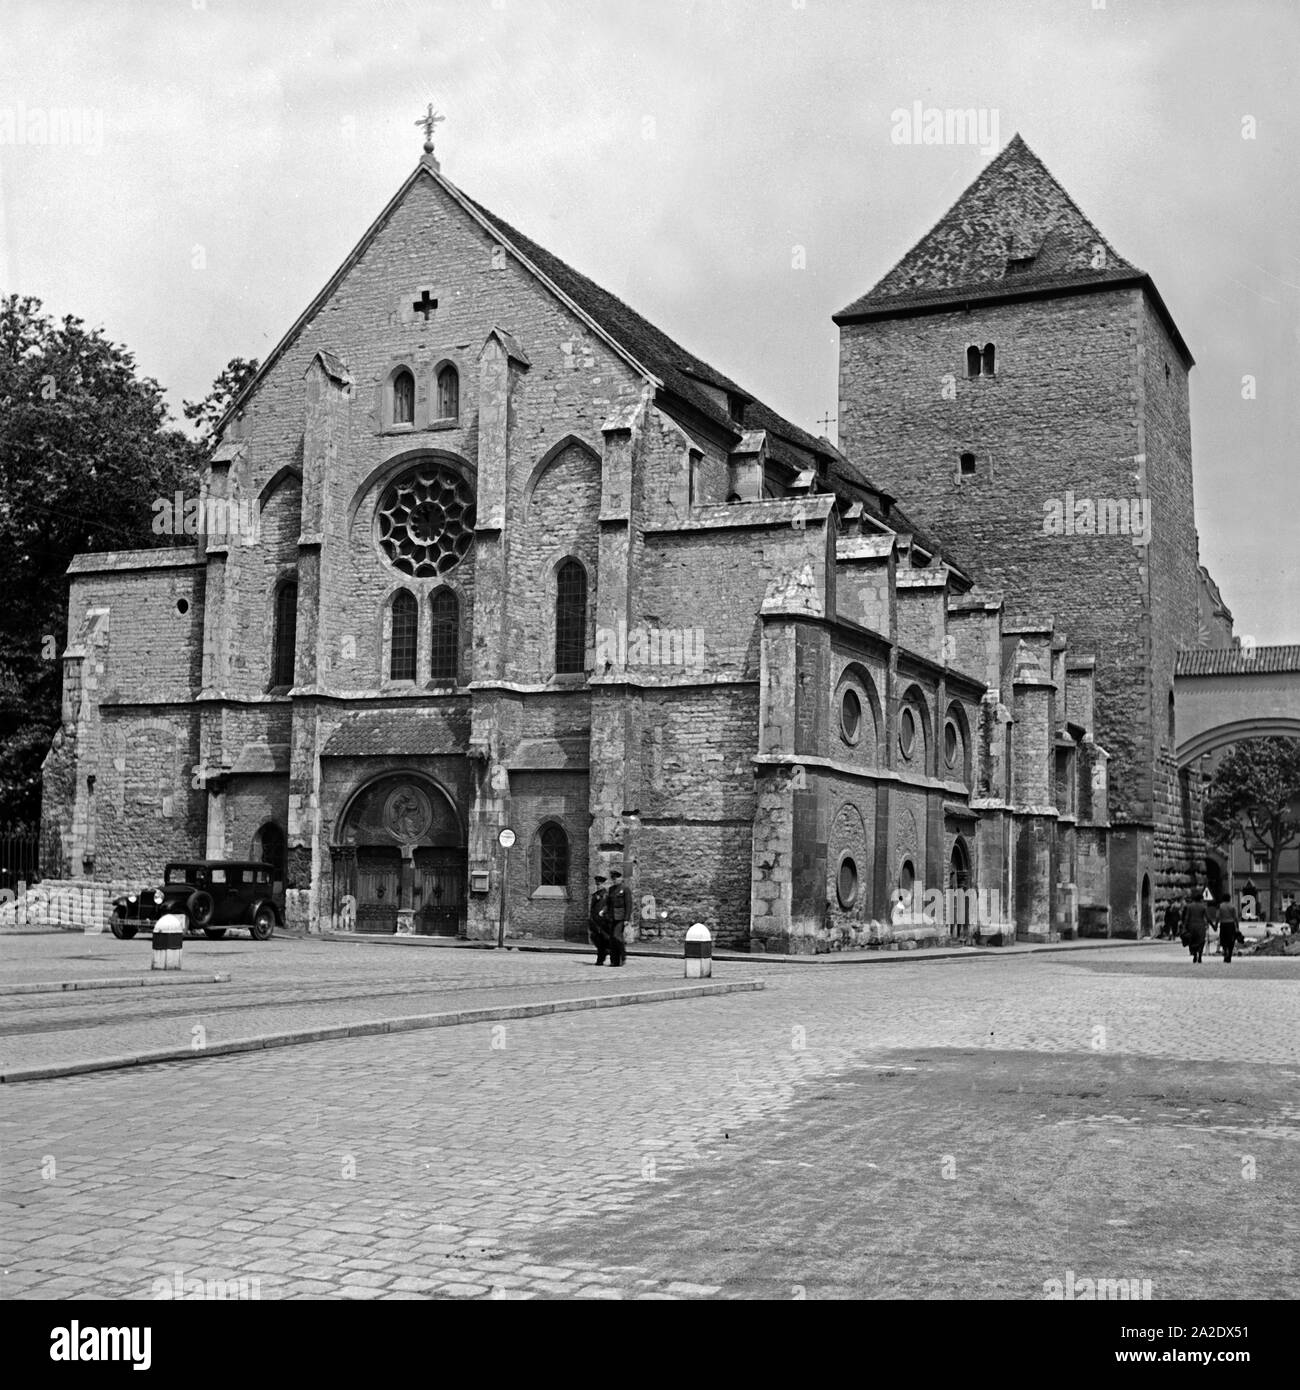 Die ehemalige Dompfarrkirche St. Ulrich in Regensburg, Deutschland 1930er Jahre. The former cathedral parish church St. Ulrich's at Regensburg, Germany 1930s. Stock Photo